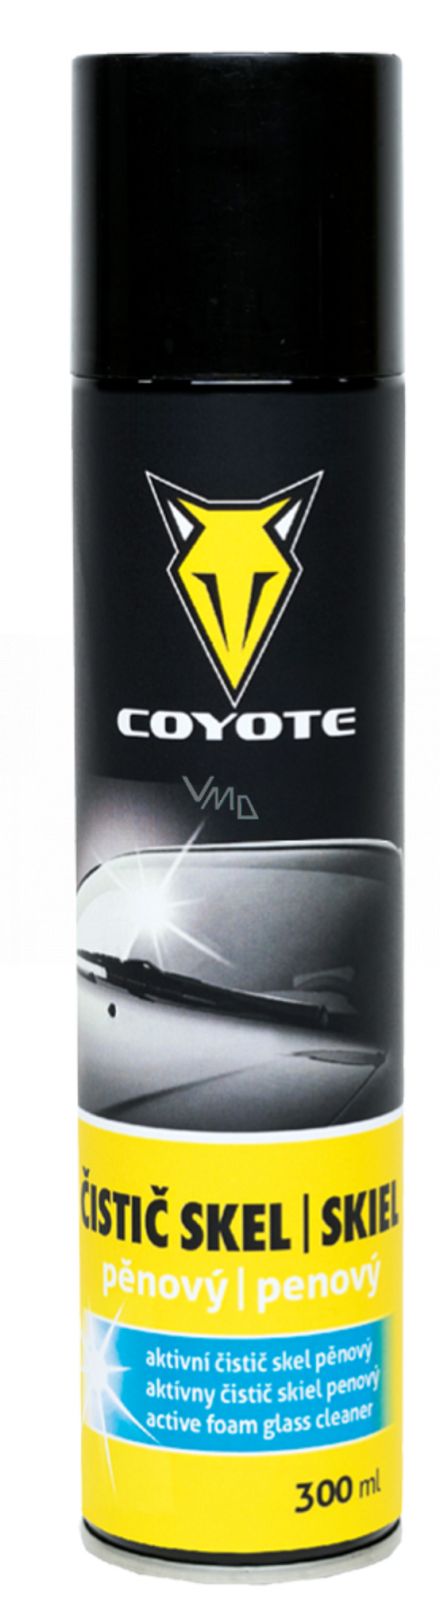 Coyote Aktivní čistič skel pěnový 300ml